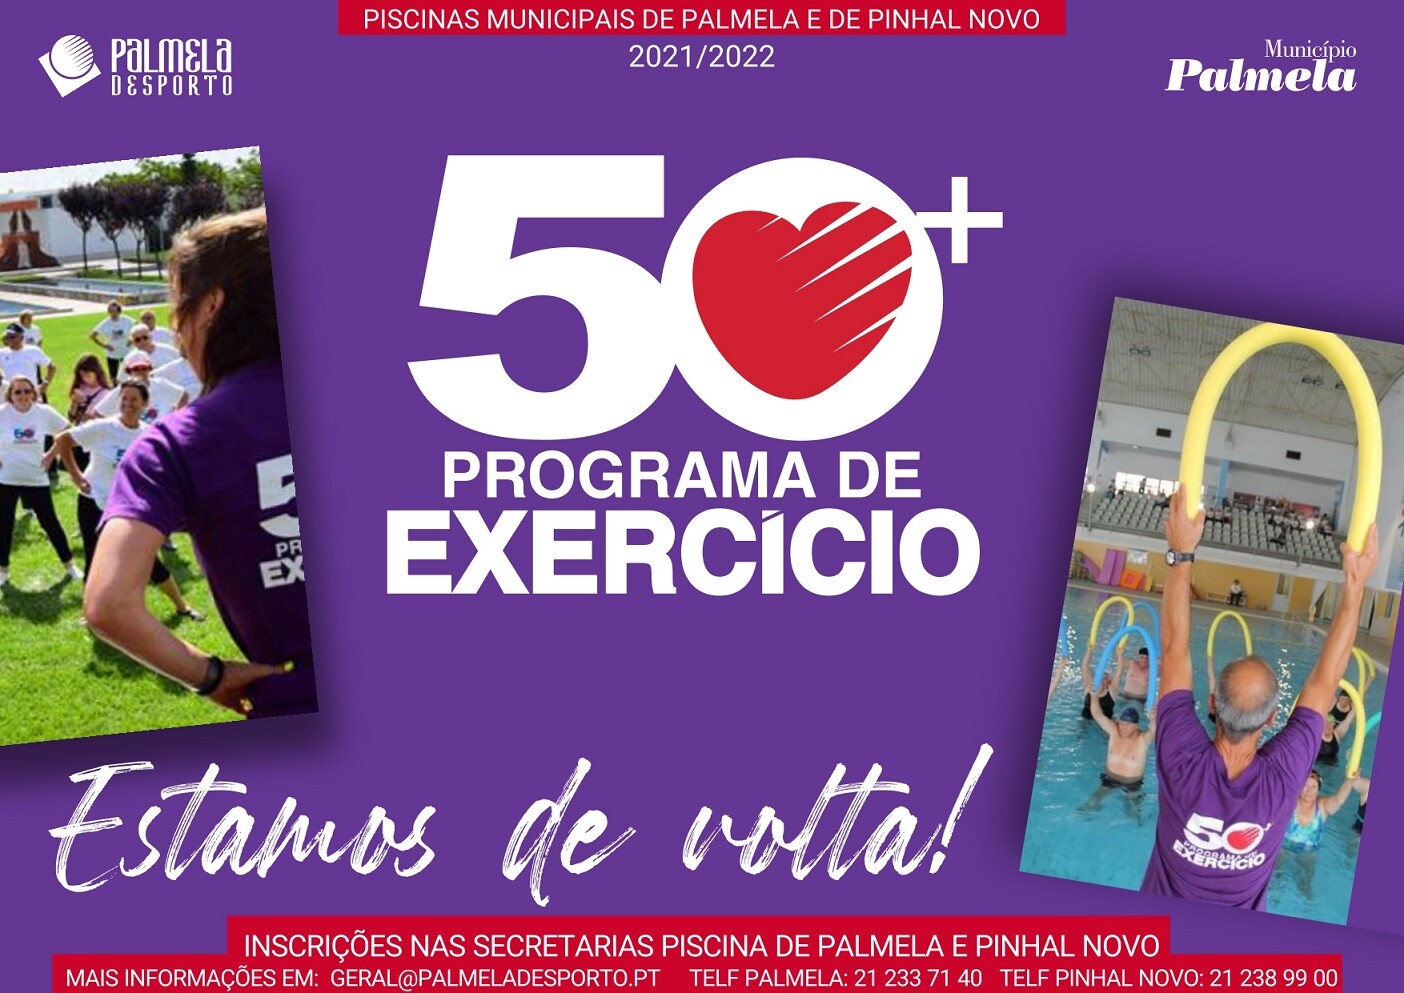 “50+ - Programa de Exercício” promove atividades em todas as freguesias